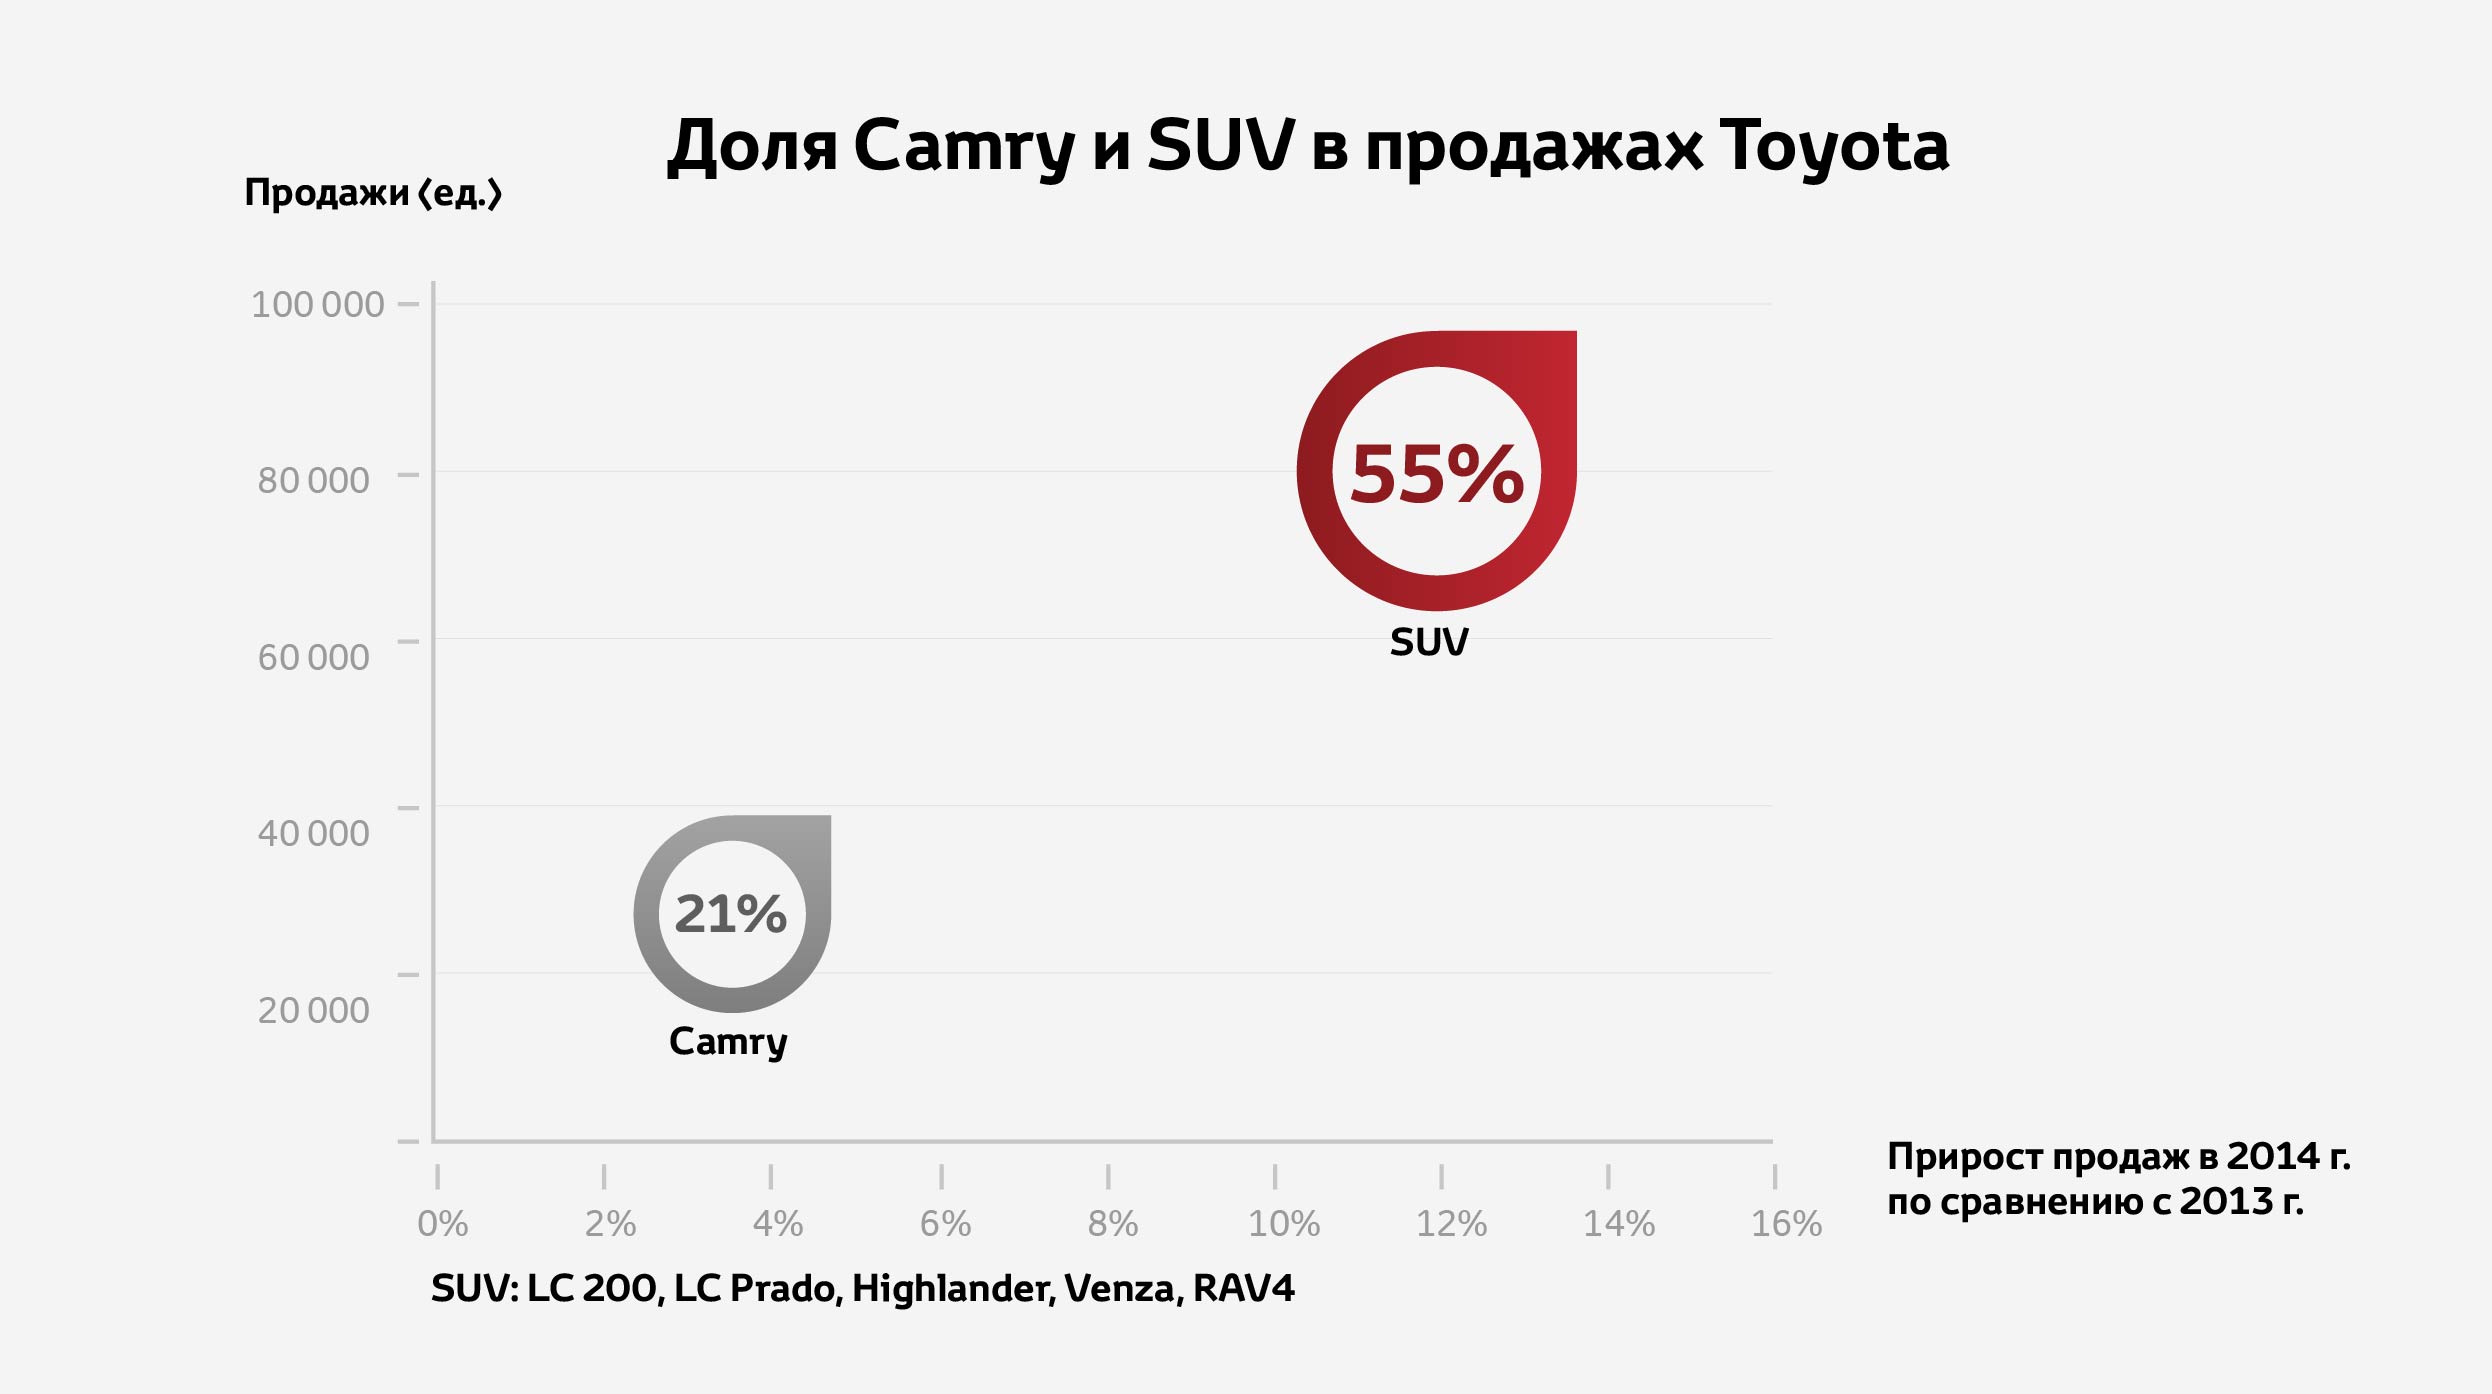 «Тойота Мотор» продемонстрировала позитивную динамику даже на падающем рынке в 2014 году